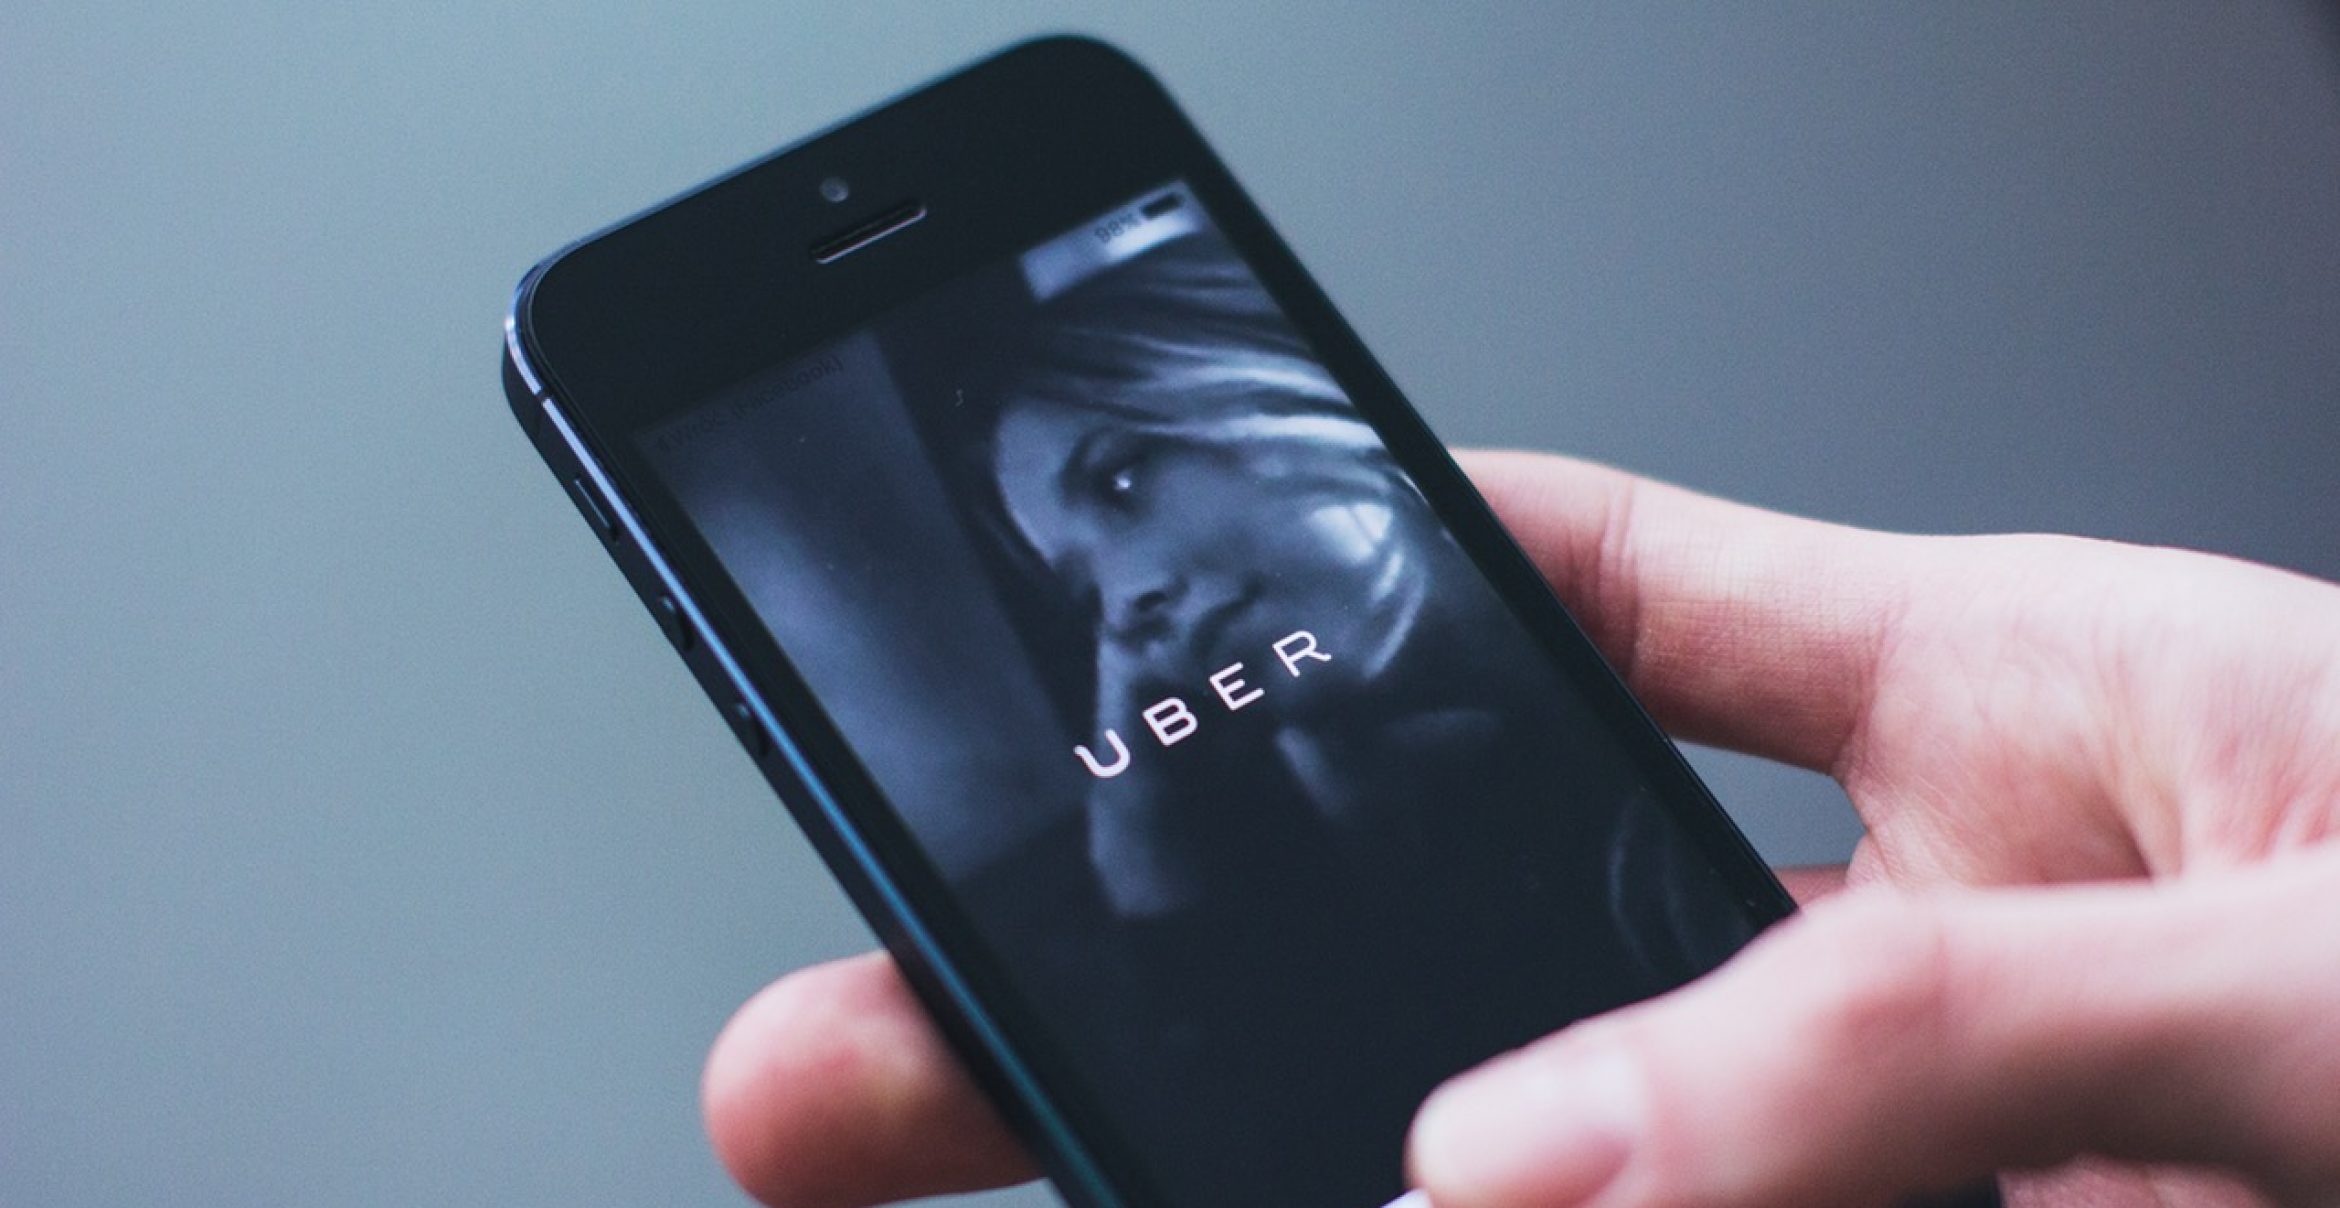 London verweigert Uber die Verlängerung der Lizenz